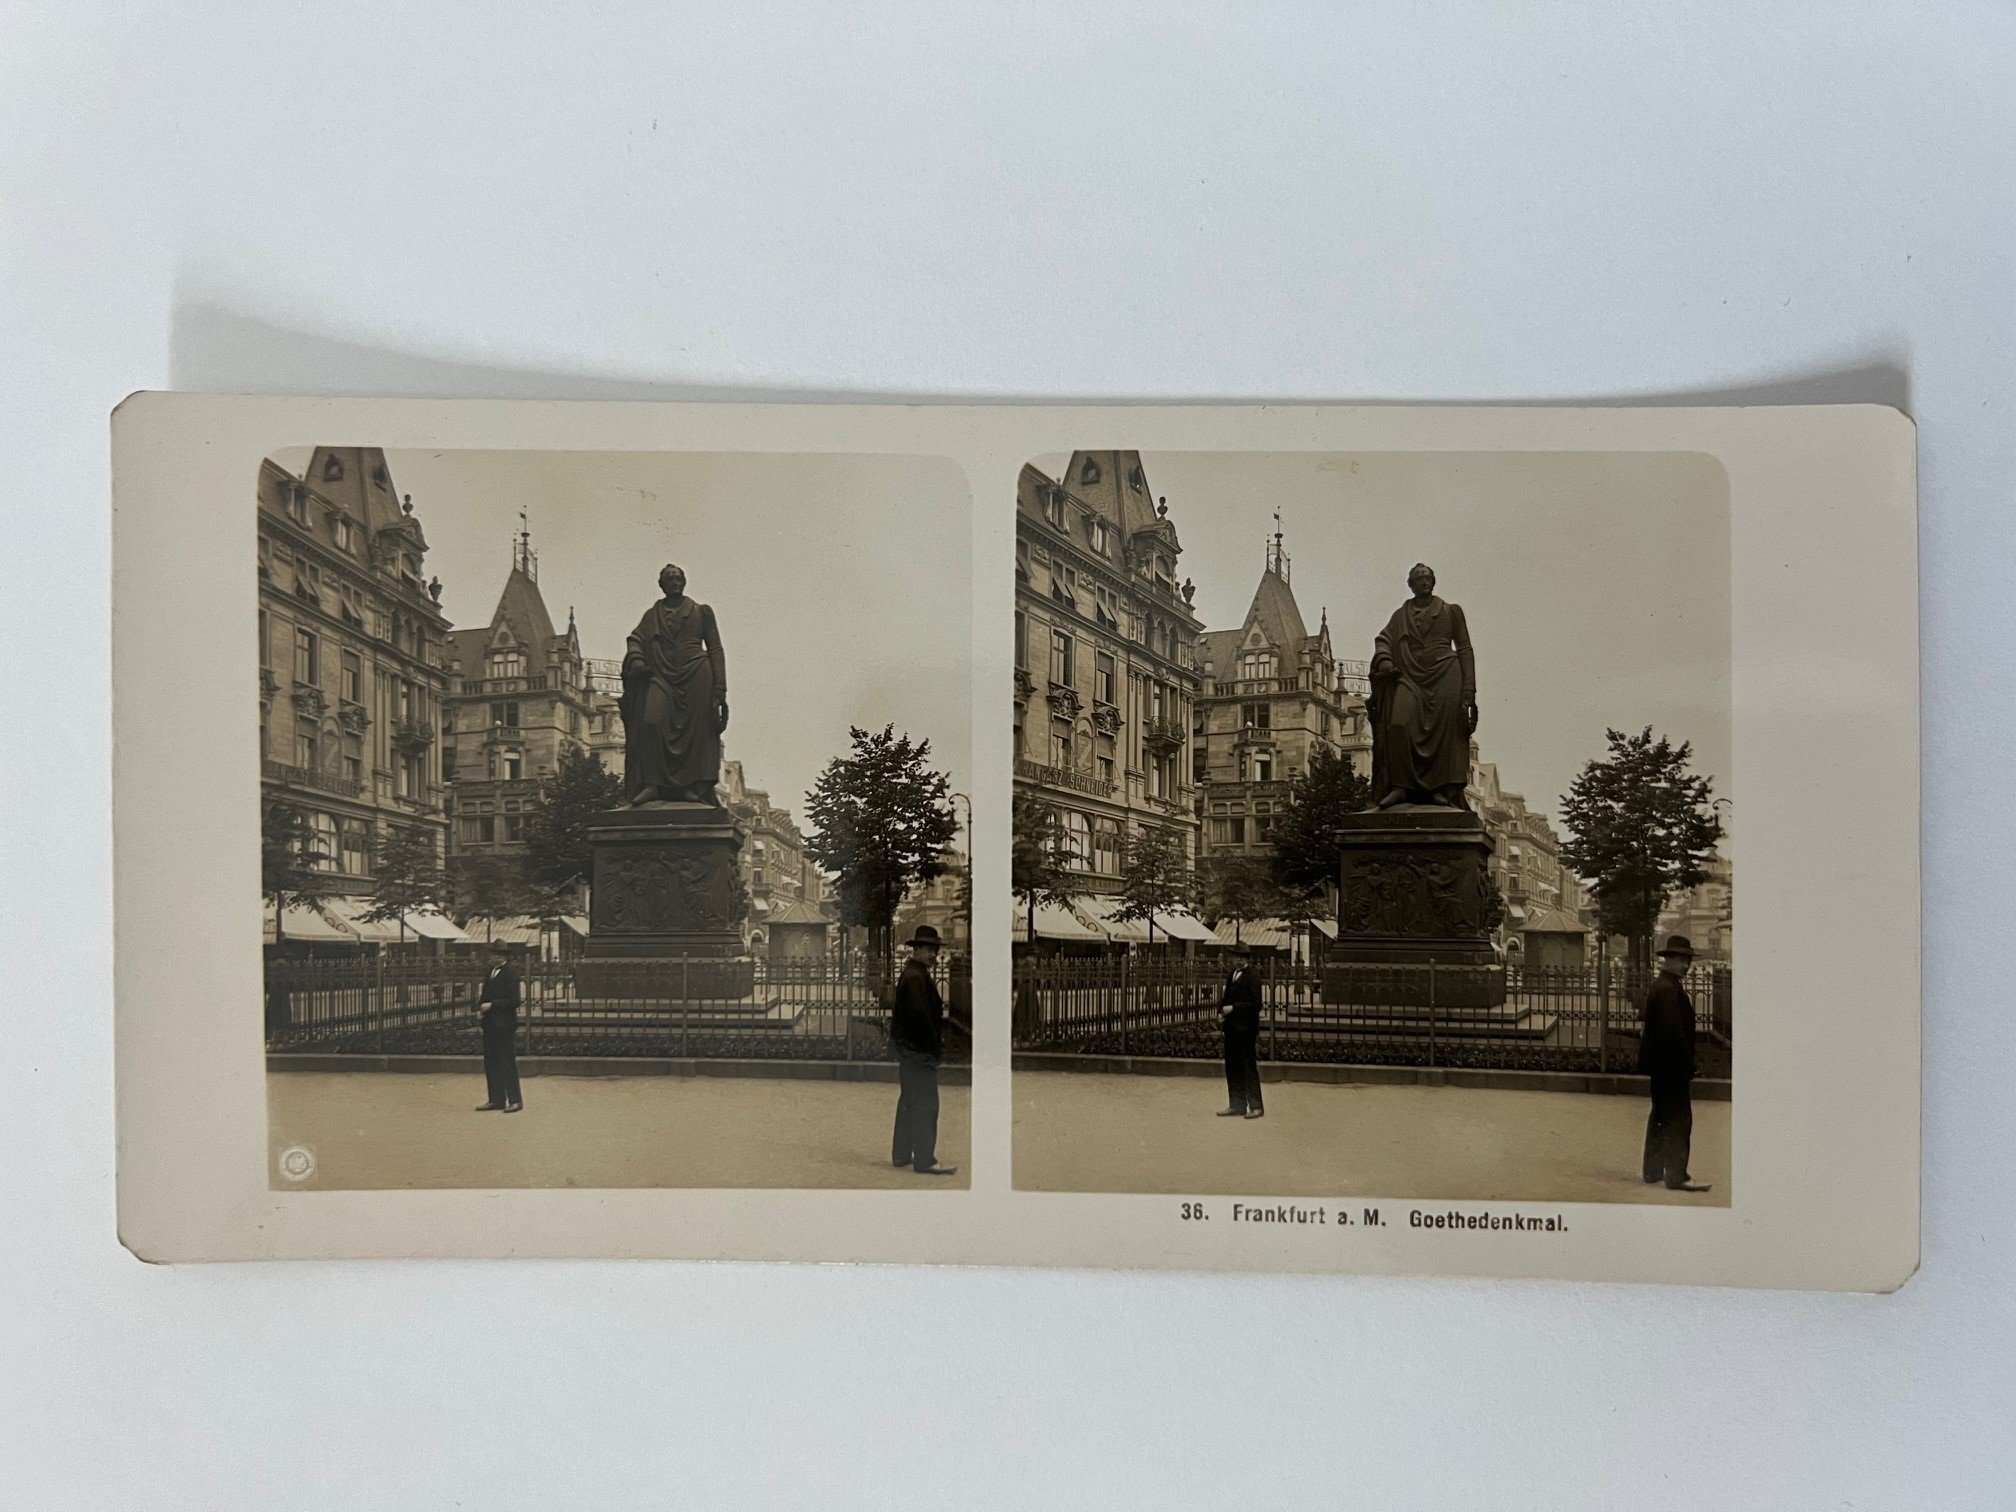 Stereobild, Unbekannter Fotograf, Frankfurt, Nr. 36, Goethedenkmal, ca. 1906. (Taunus-Rhein-Main - Regionalgeschichtliche Sammlung Dr. Stefan Naas CC BY-NC-SA)